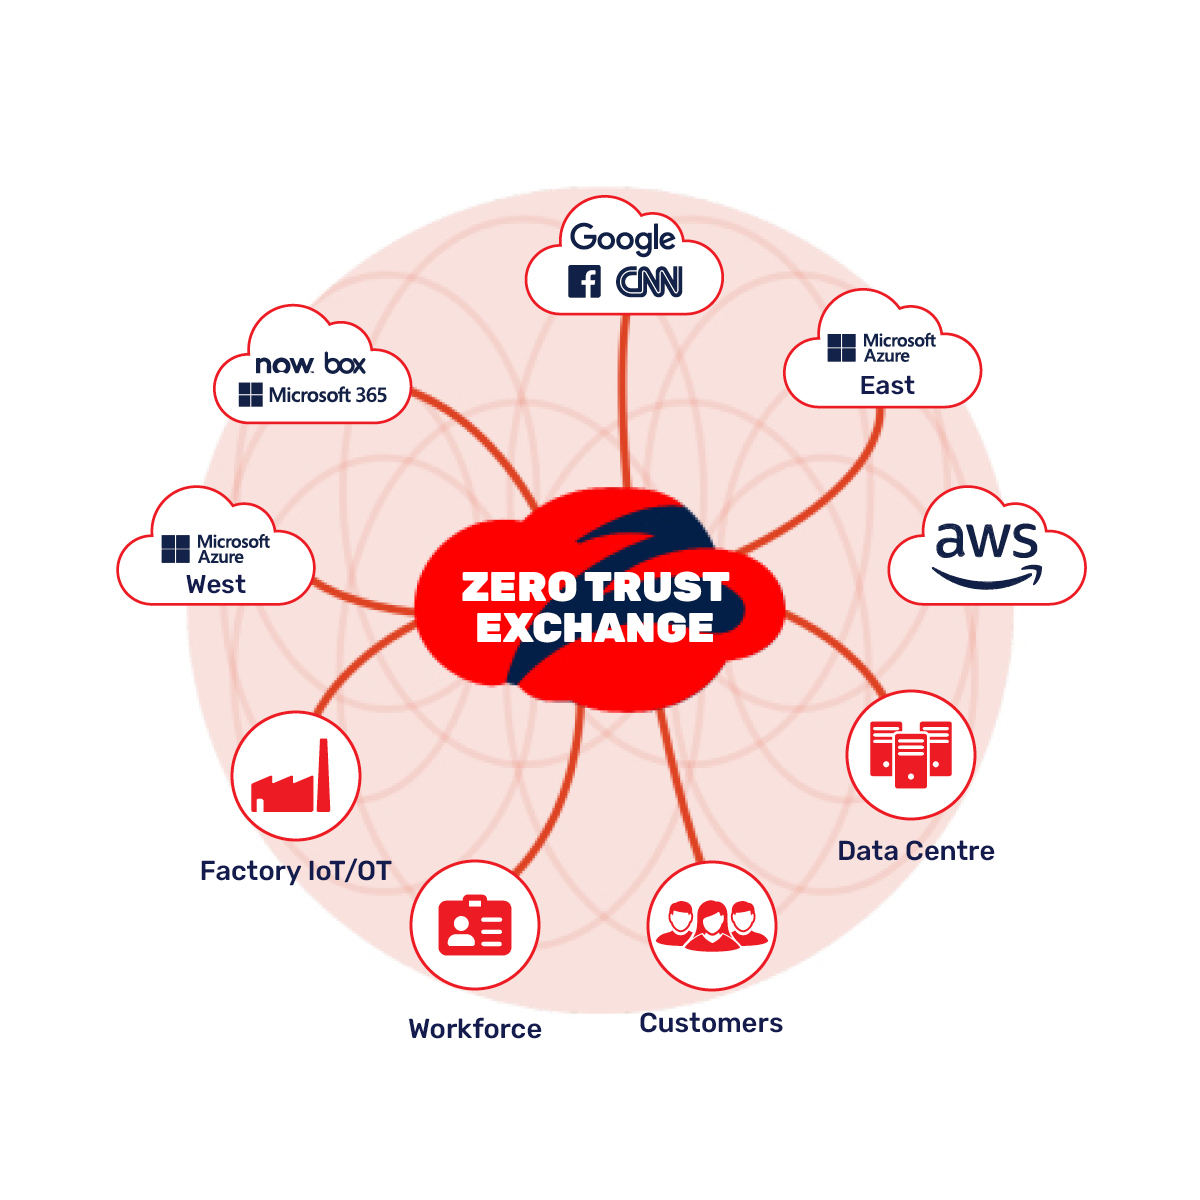 7 Key capabilities of Zscaler Zero Trust Exchange